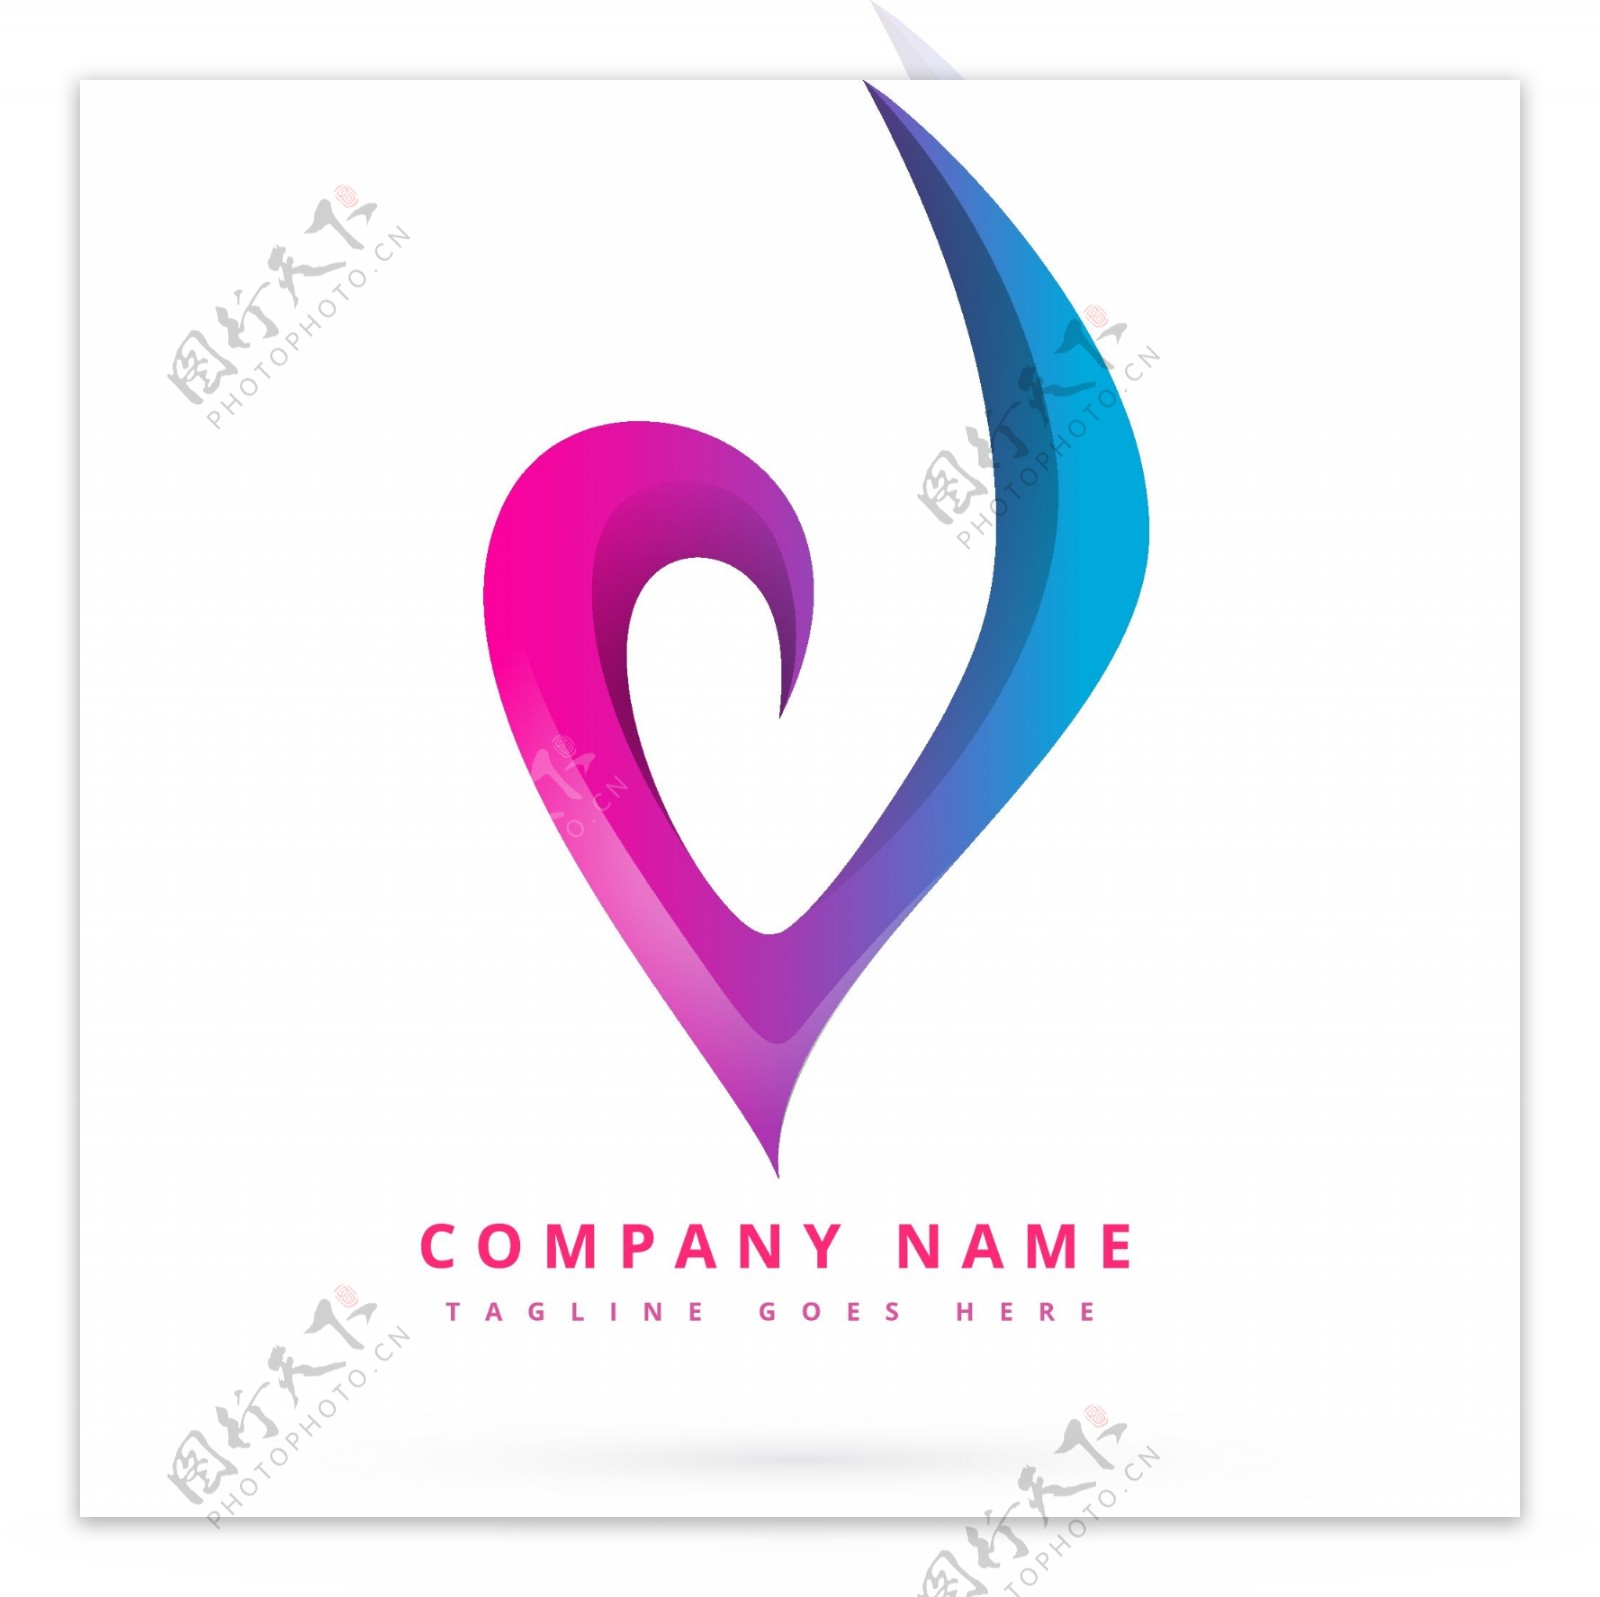 互联网娱乐音乐形状用途标识logo